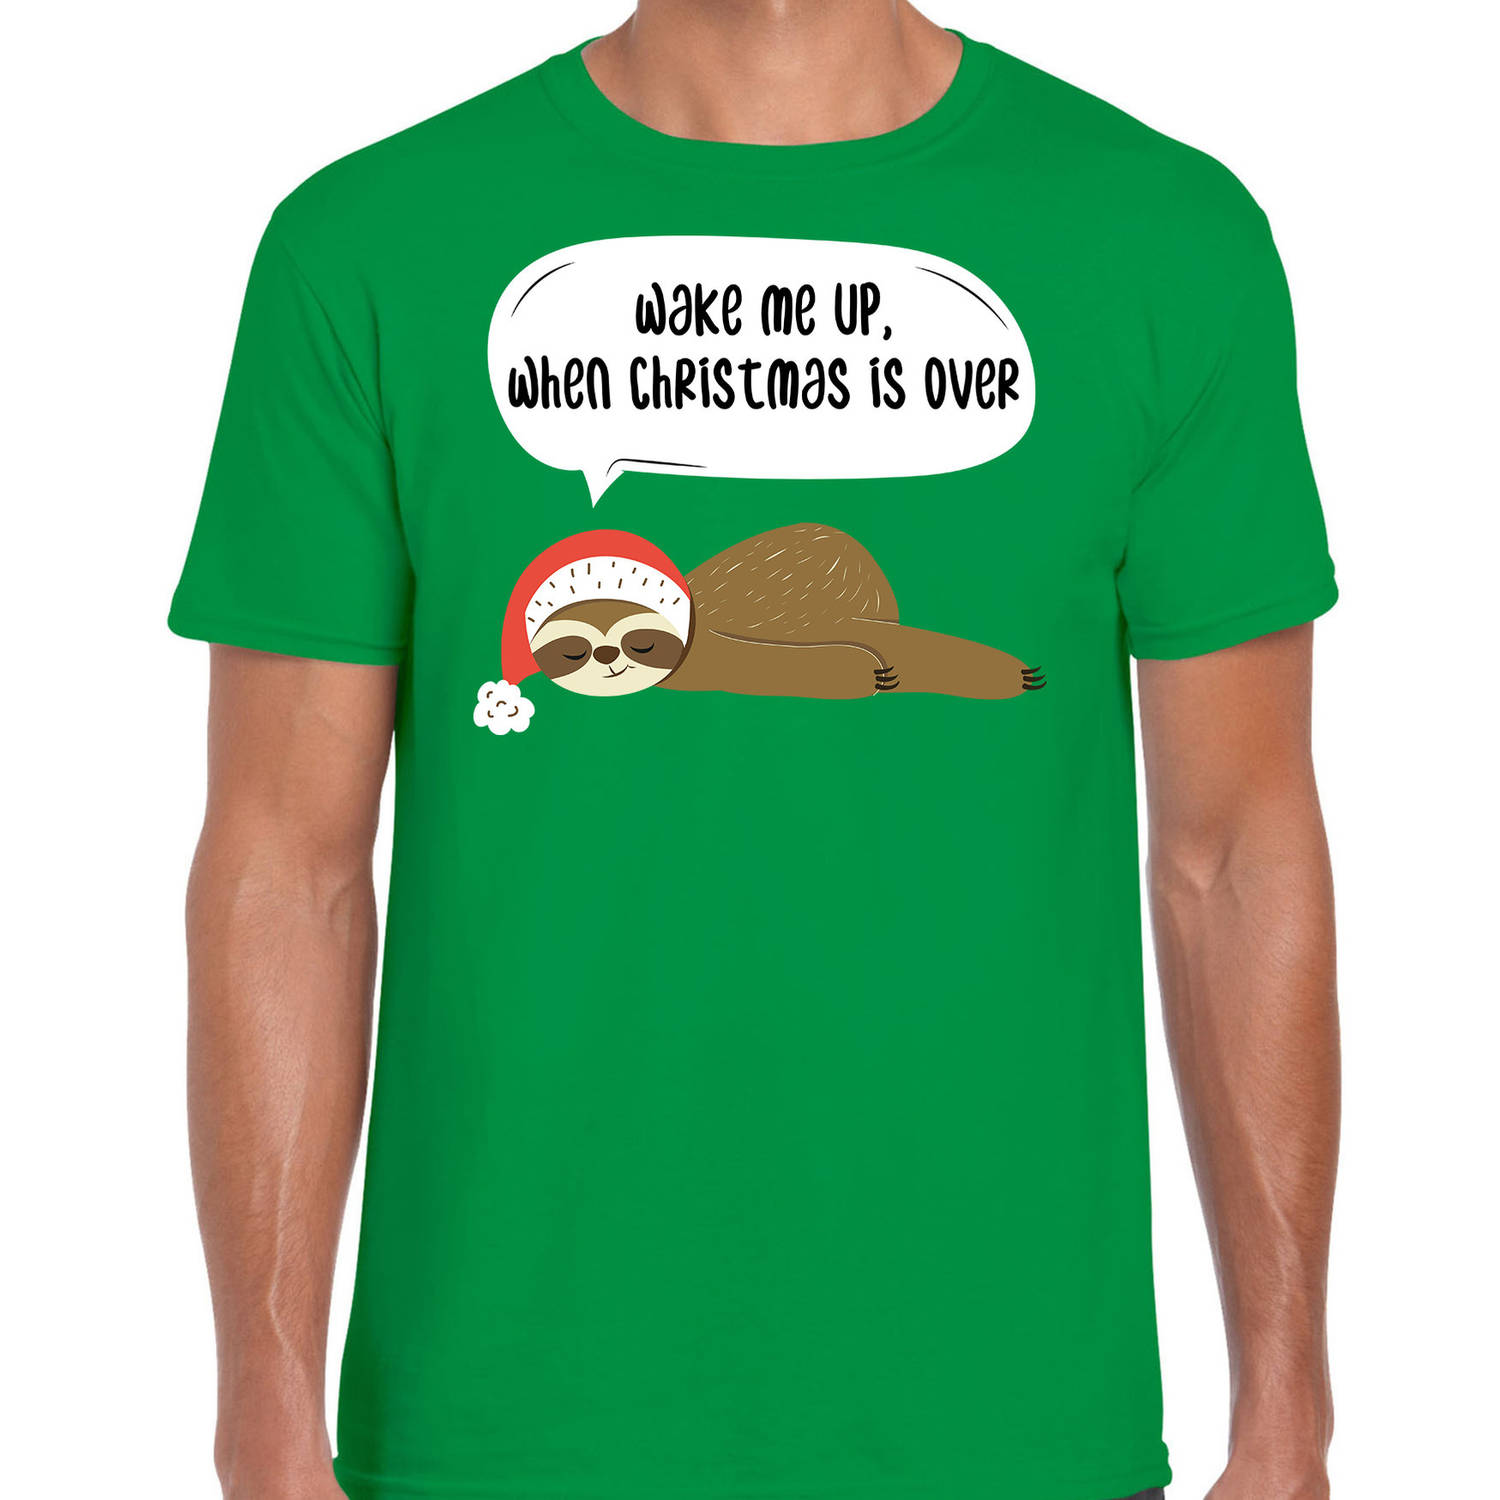 Groen Kerst shirt/ Kerstkleding met luiaard Wake me up when christmas is over voor heren M - kerst t-shirts